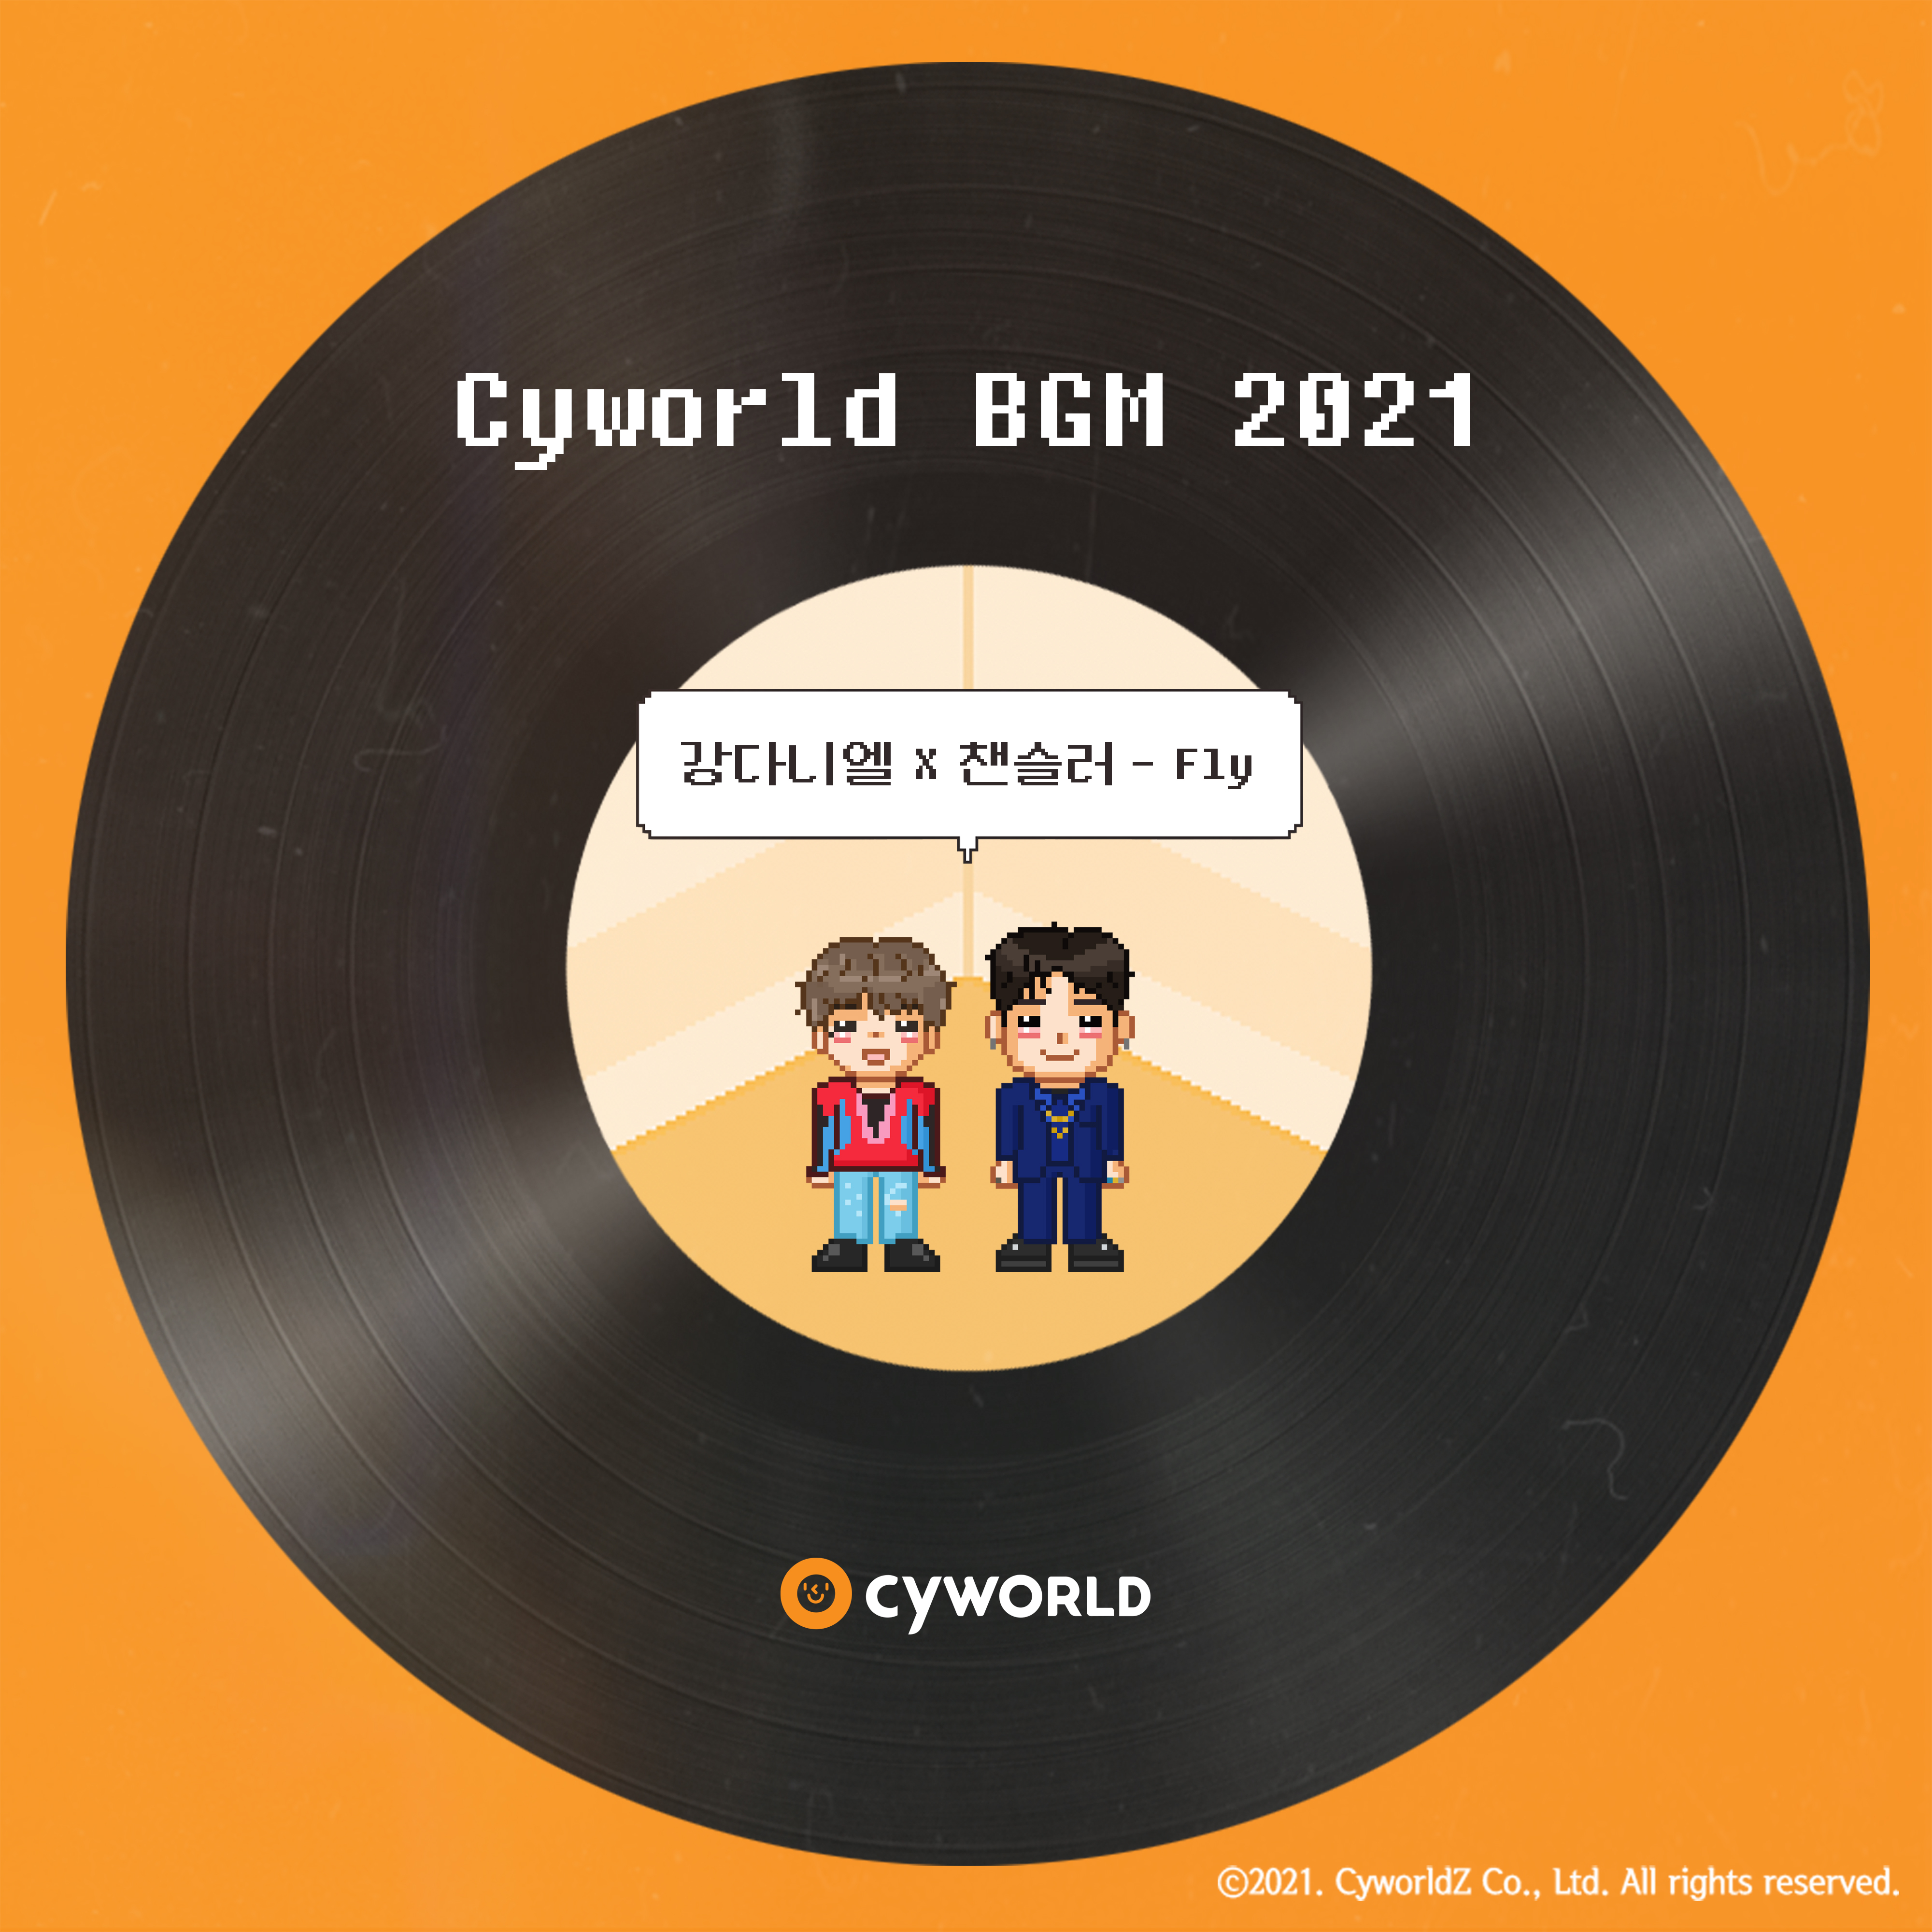 [情報] Cyworld BGM 2021-姜丹尼爾, Chancellor